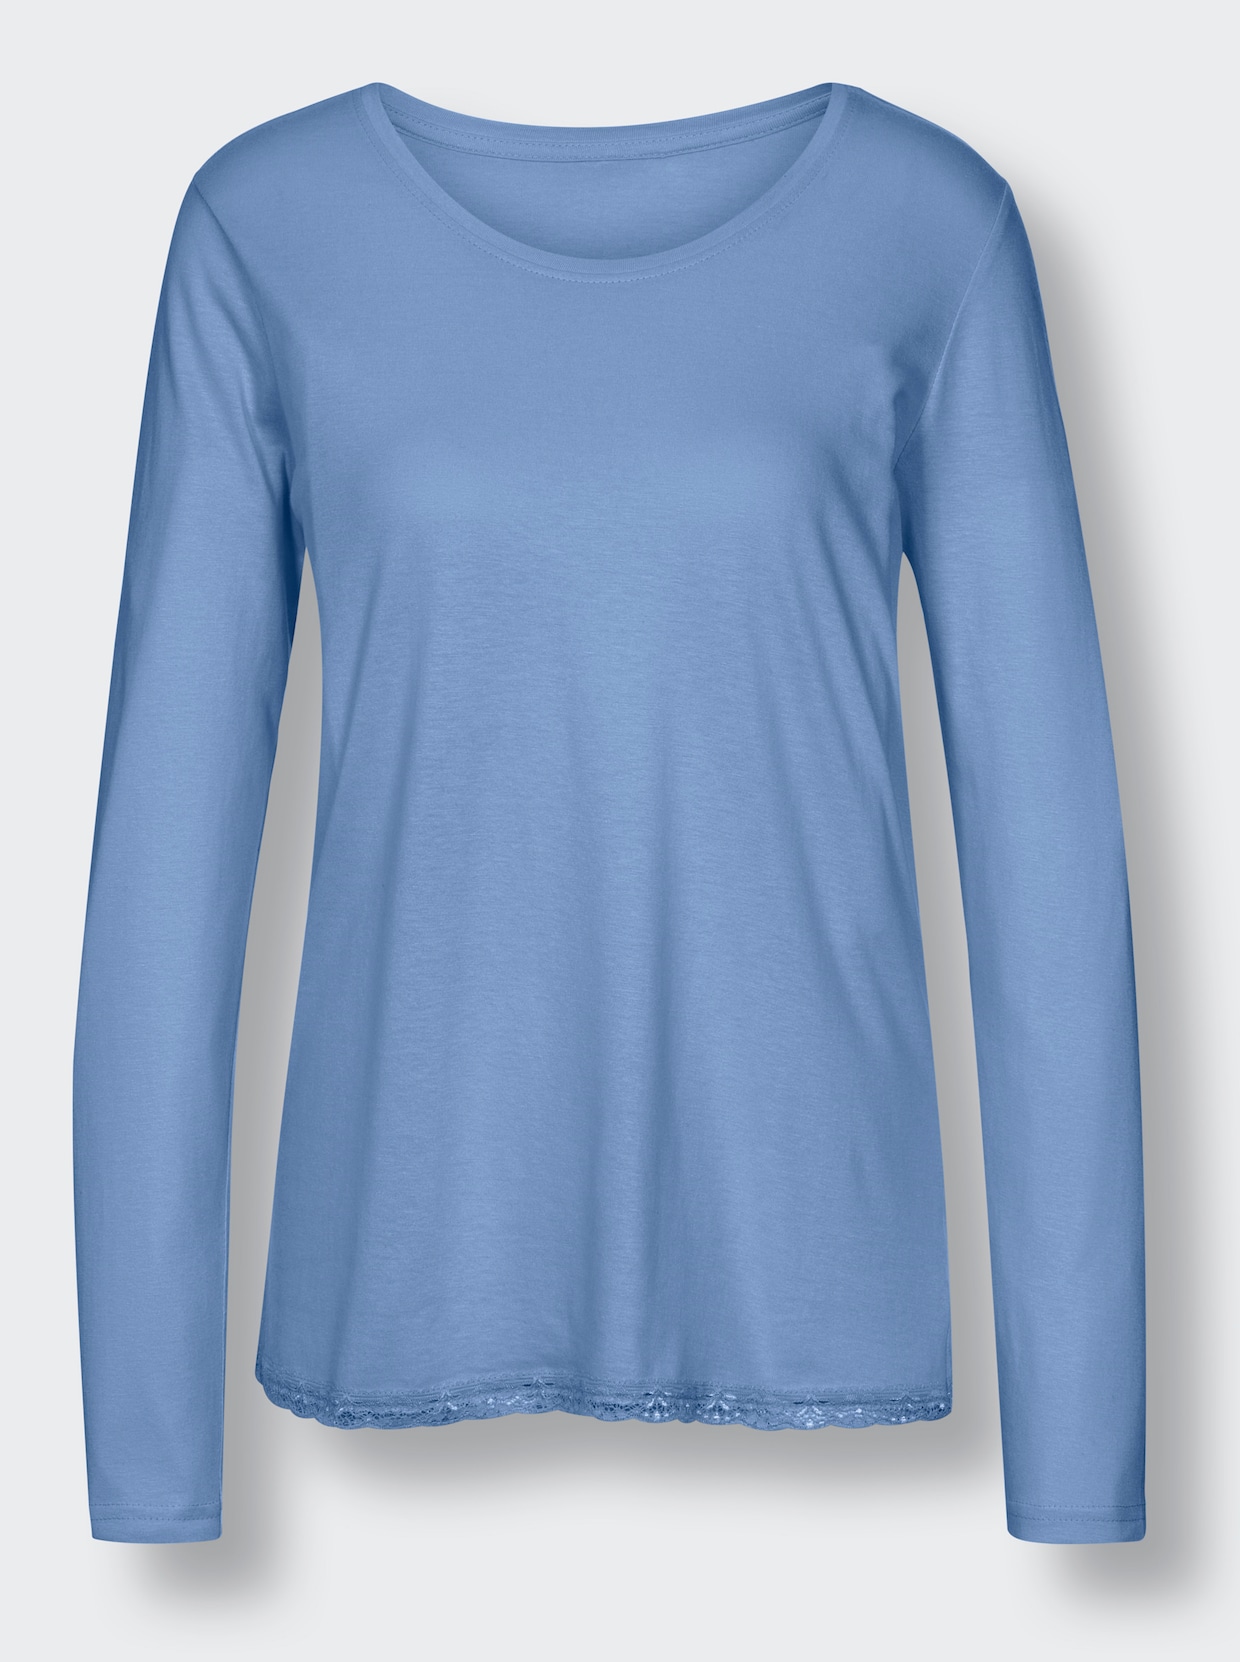 wäschepur Schlafanzug-Shirt - himmelblau